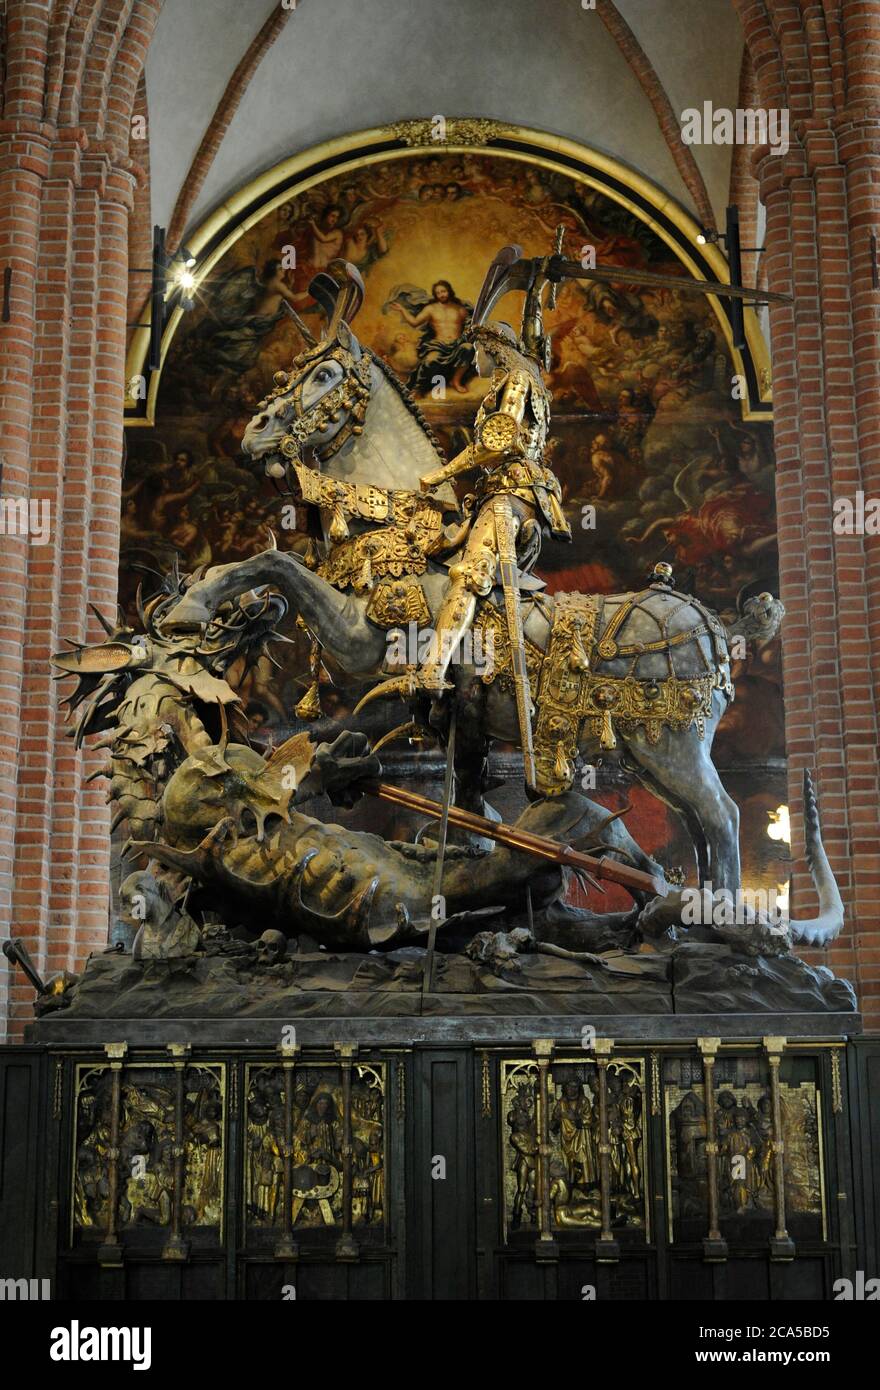 Estatua ecuestre de San Jorge y el Dragón, 1489. Gótico tardío. Atribuido a Bernt Notke (ca.1440-1509). Fue encargado por el regente sueco Sten Sture the Elder. Storkykán. Estocolmo, Suecia. Foto de stock